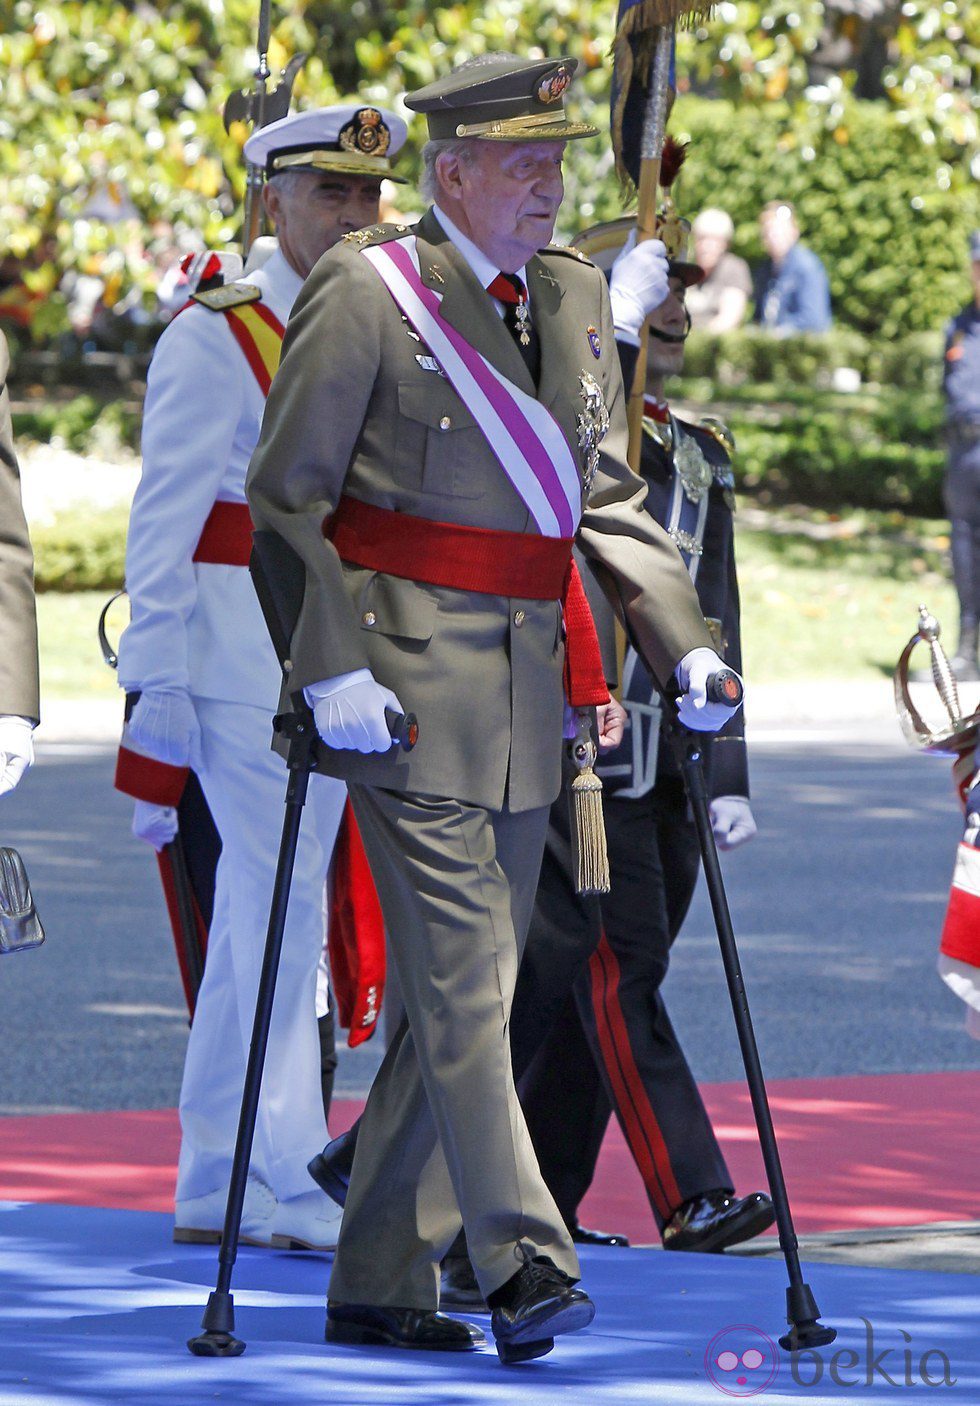 El Rey Juan Carlos en el Día de las Fuerzas Armadas 2013